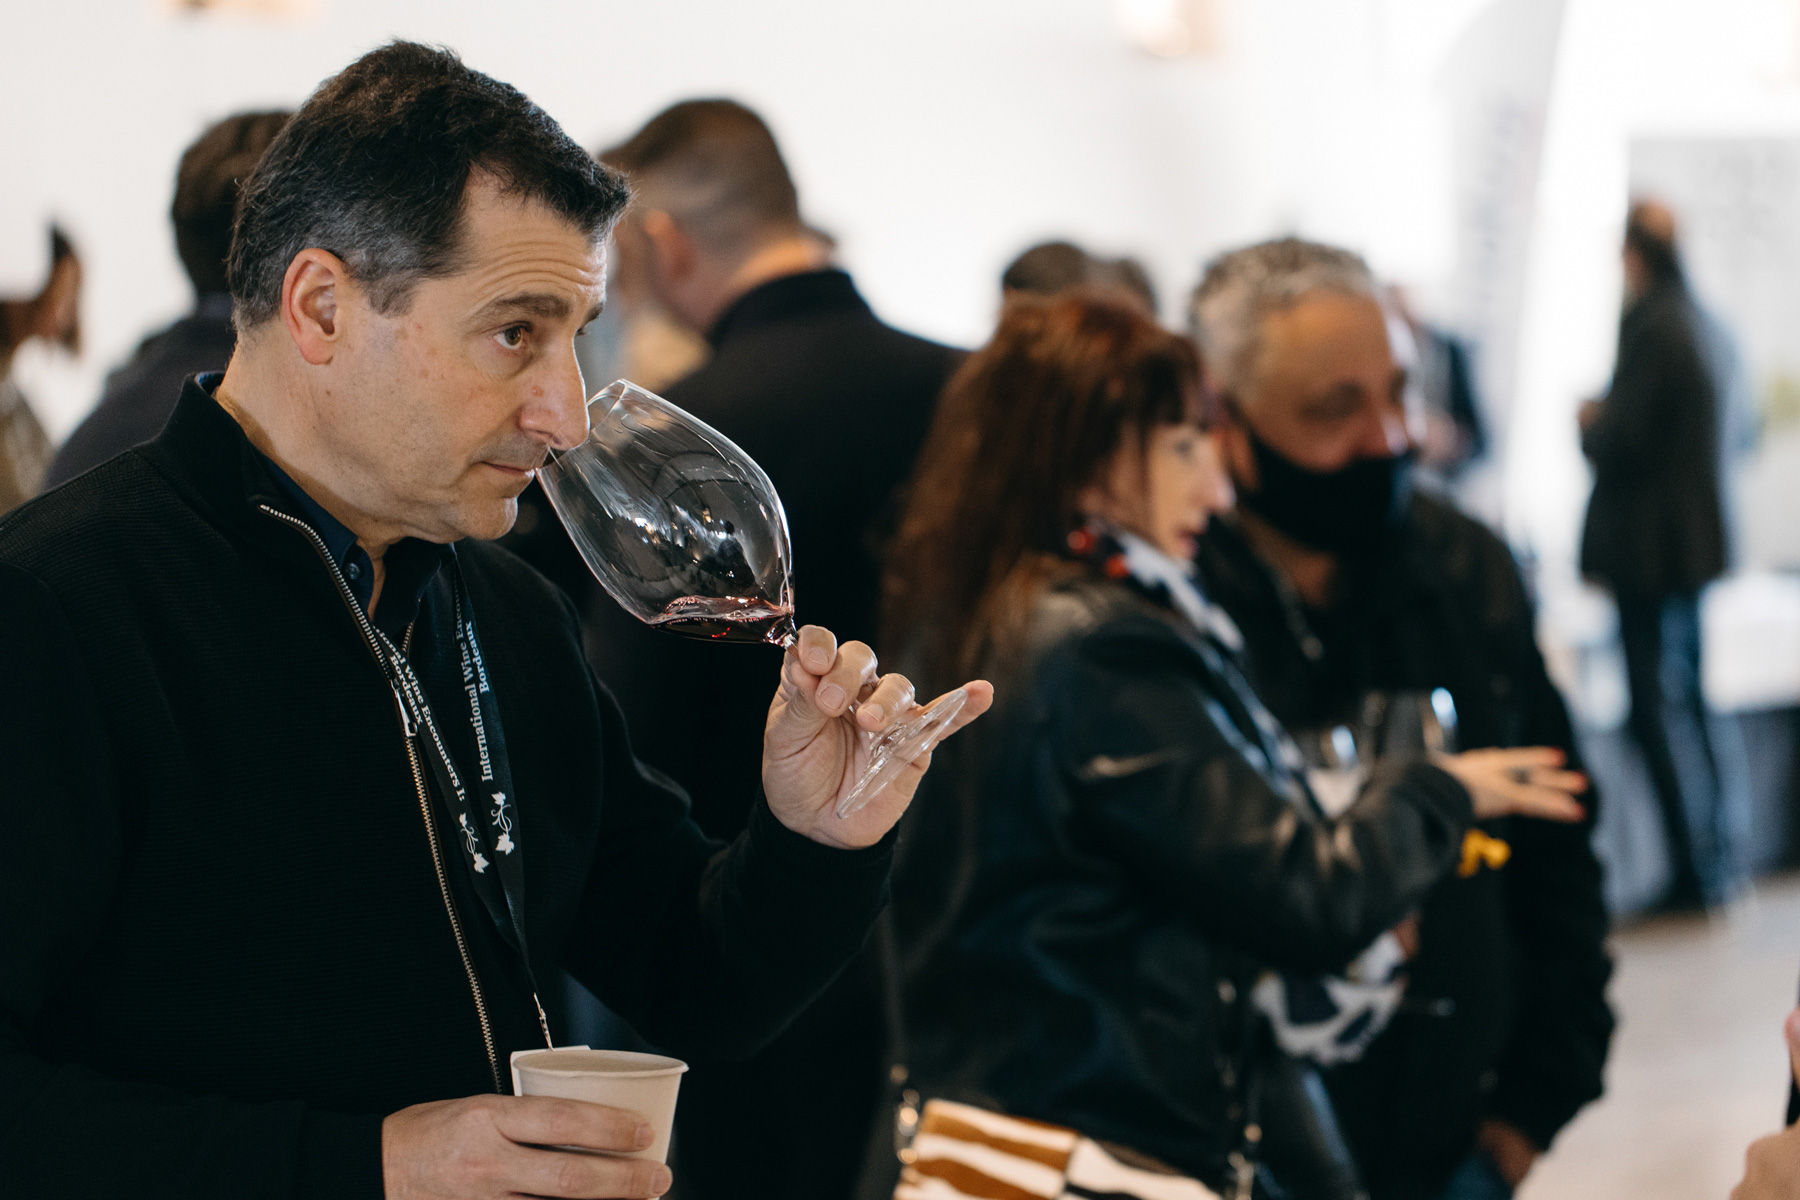 Josep Roca conducirá una cata única que mostrará la sinergia perfecta entre vino y tiempo